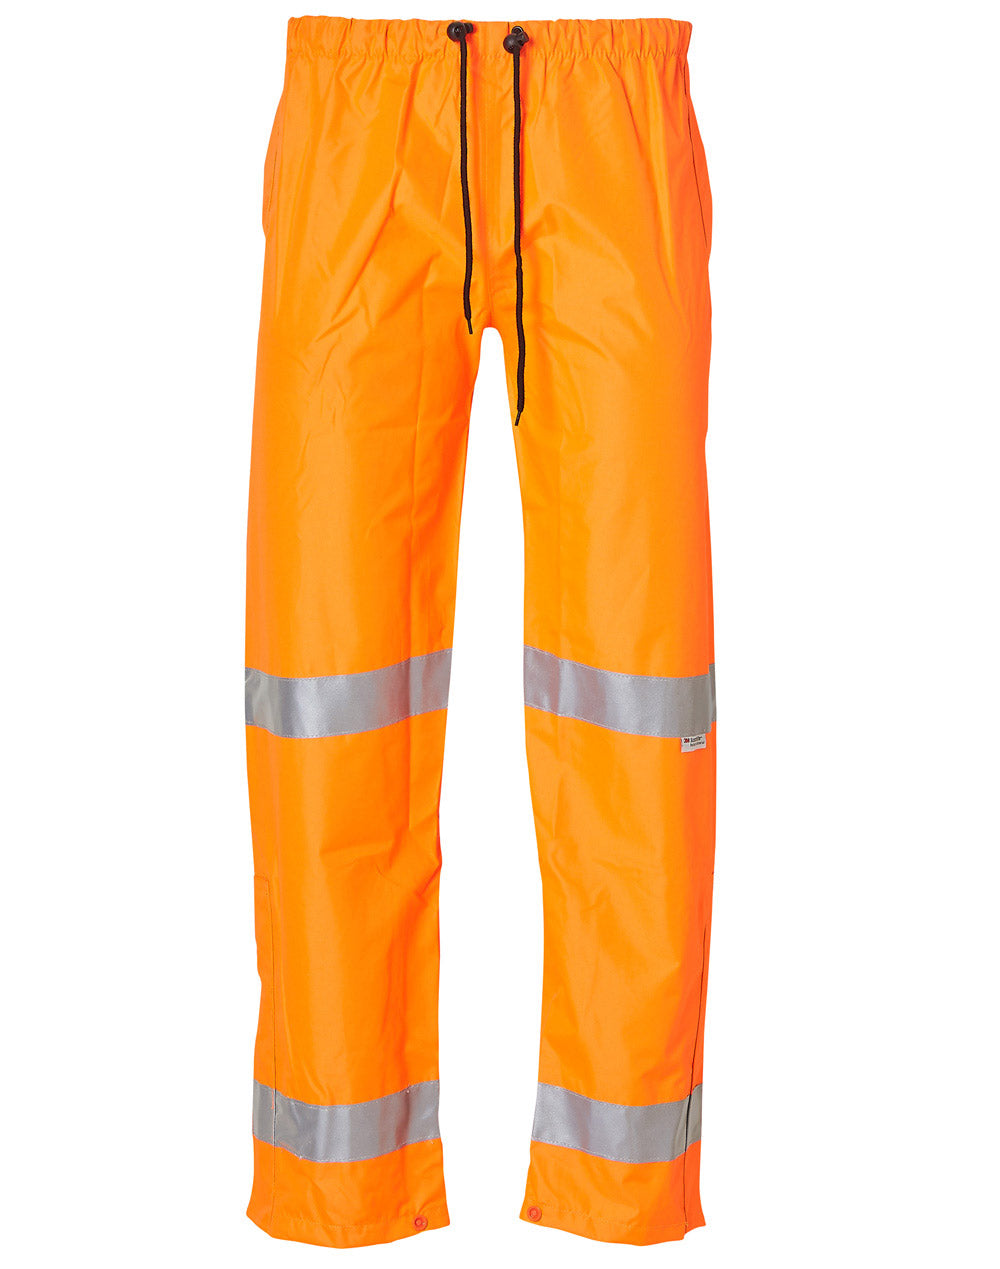 High Vis safety pants by Winning Spirit in fluorescent orange